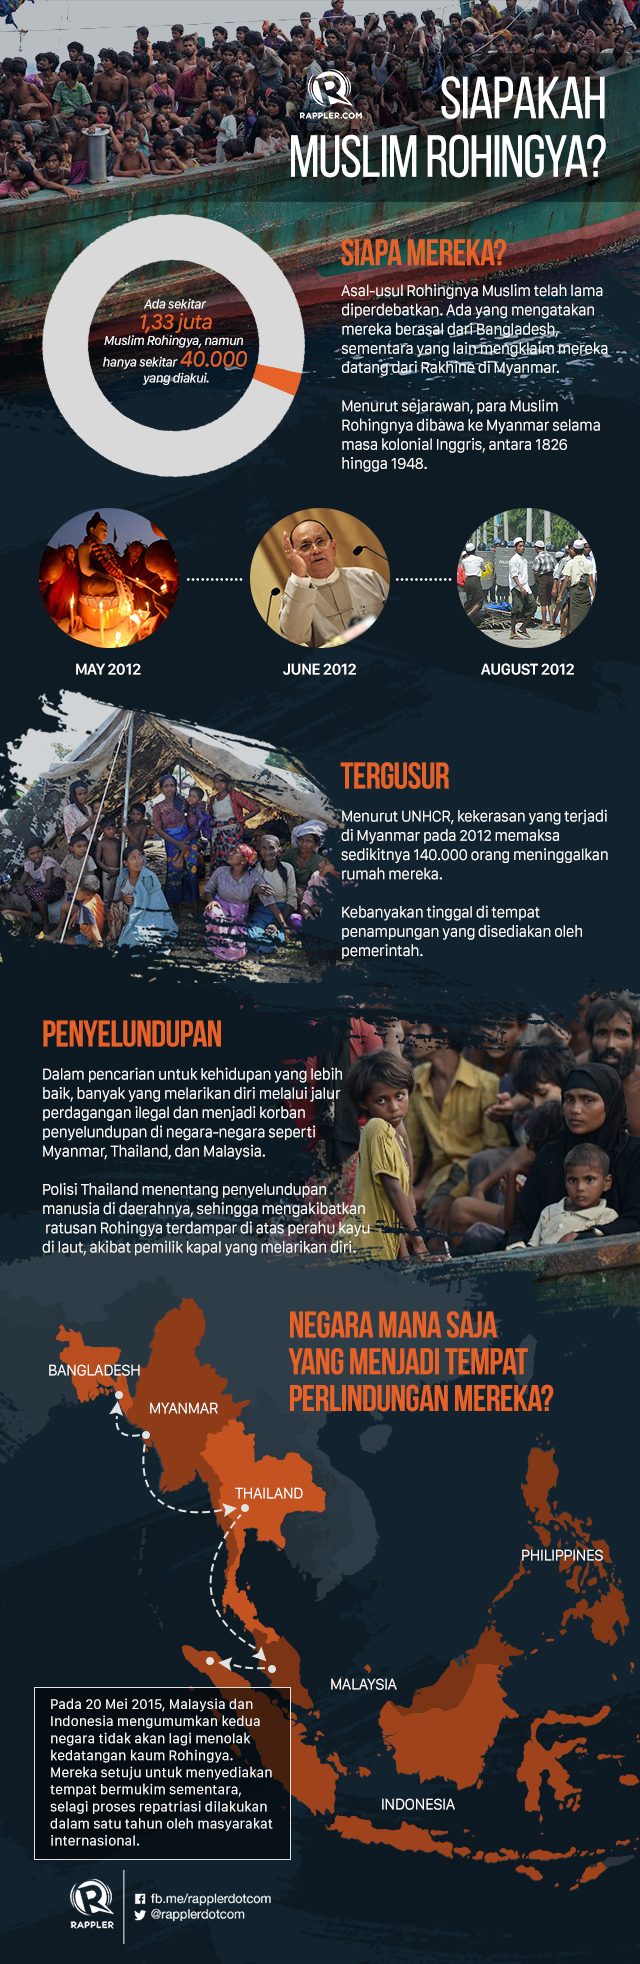 CEK FAKTA: Siapakah Rohingya dan mengapa mereka termarjinalkan?